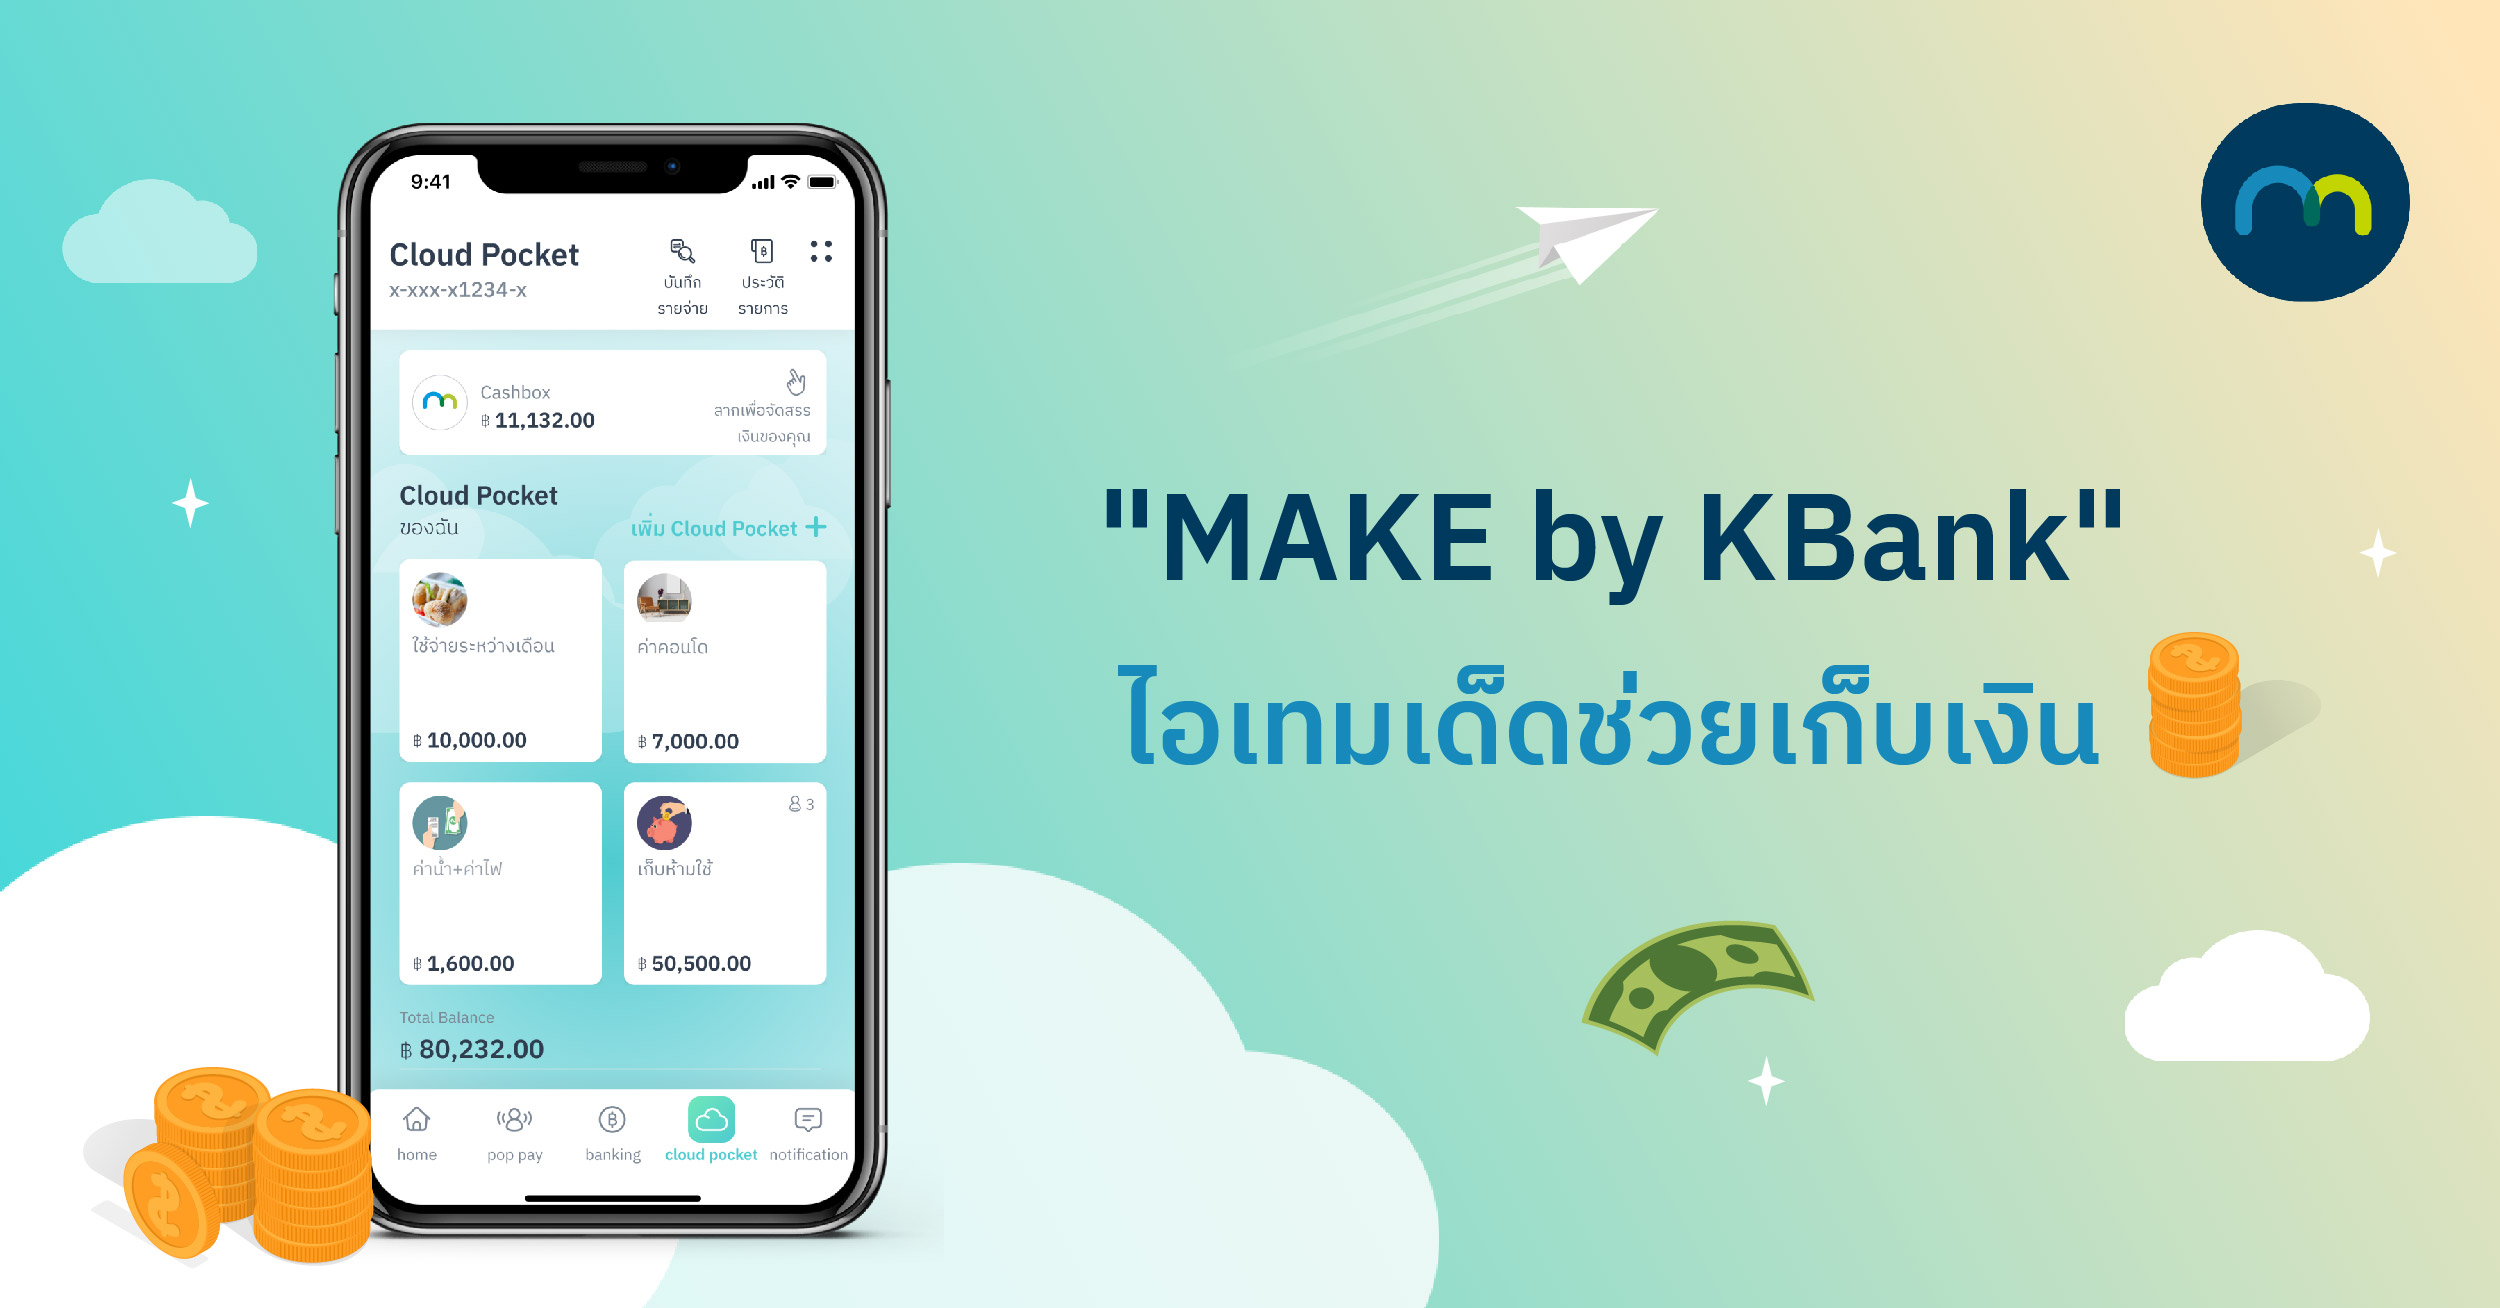 อยากมีเงินเก็บ ทำ 3 สิ่งนี้ต่อเนื่องถึงเป้าหมายแน่นอน | Make By Kbank